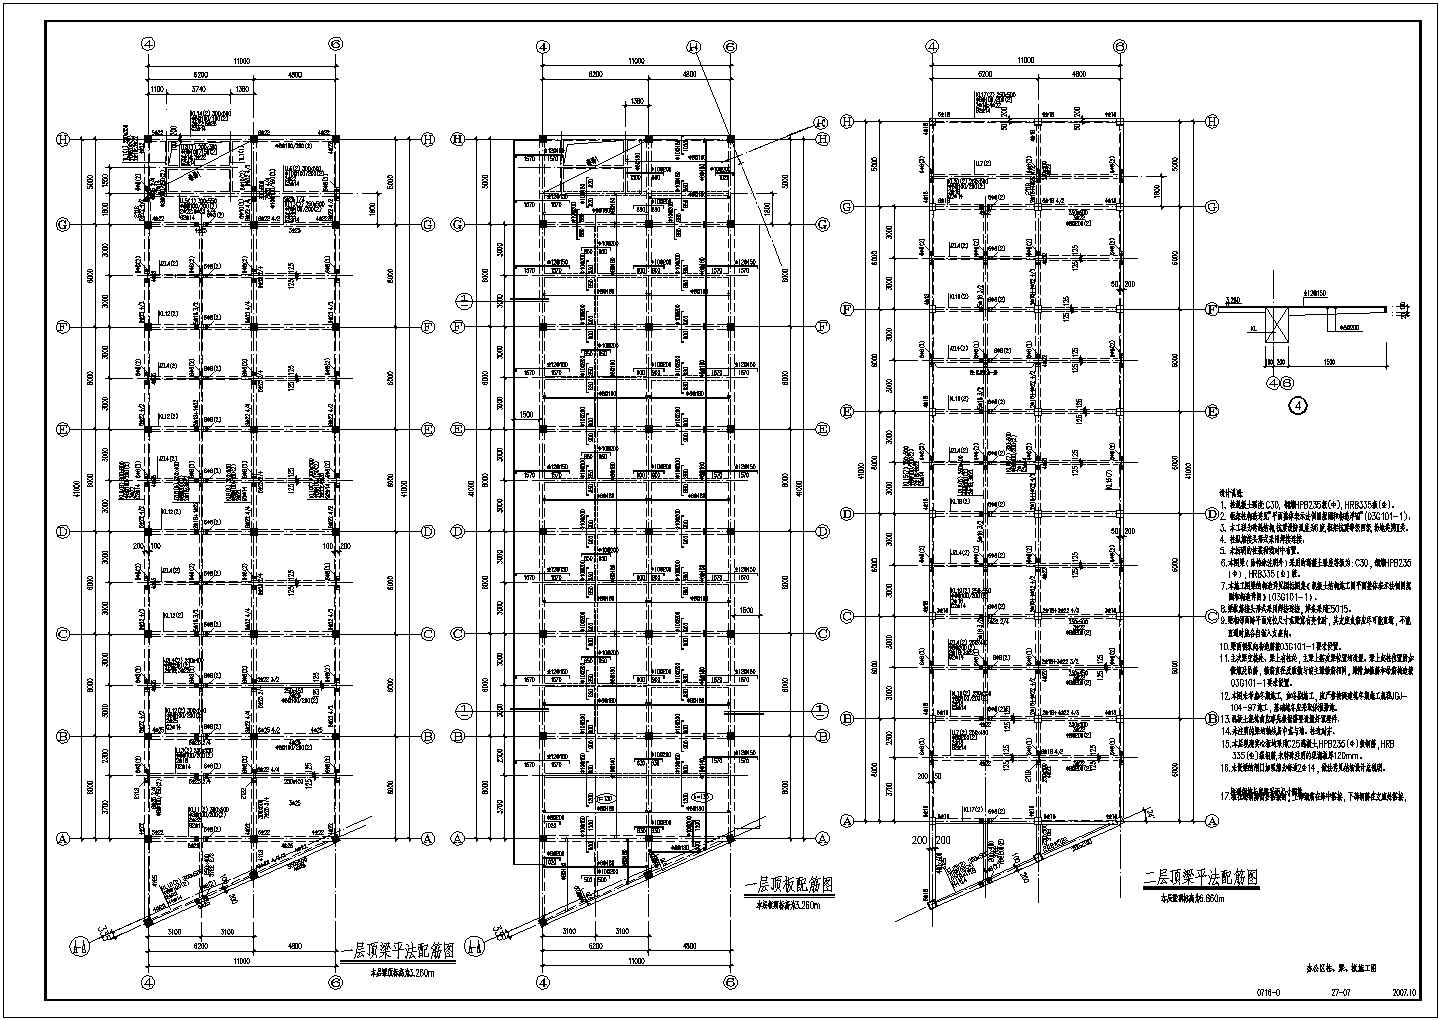 条形基础4S服务站钢框架结构施工图